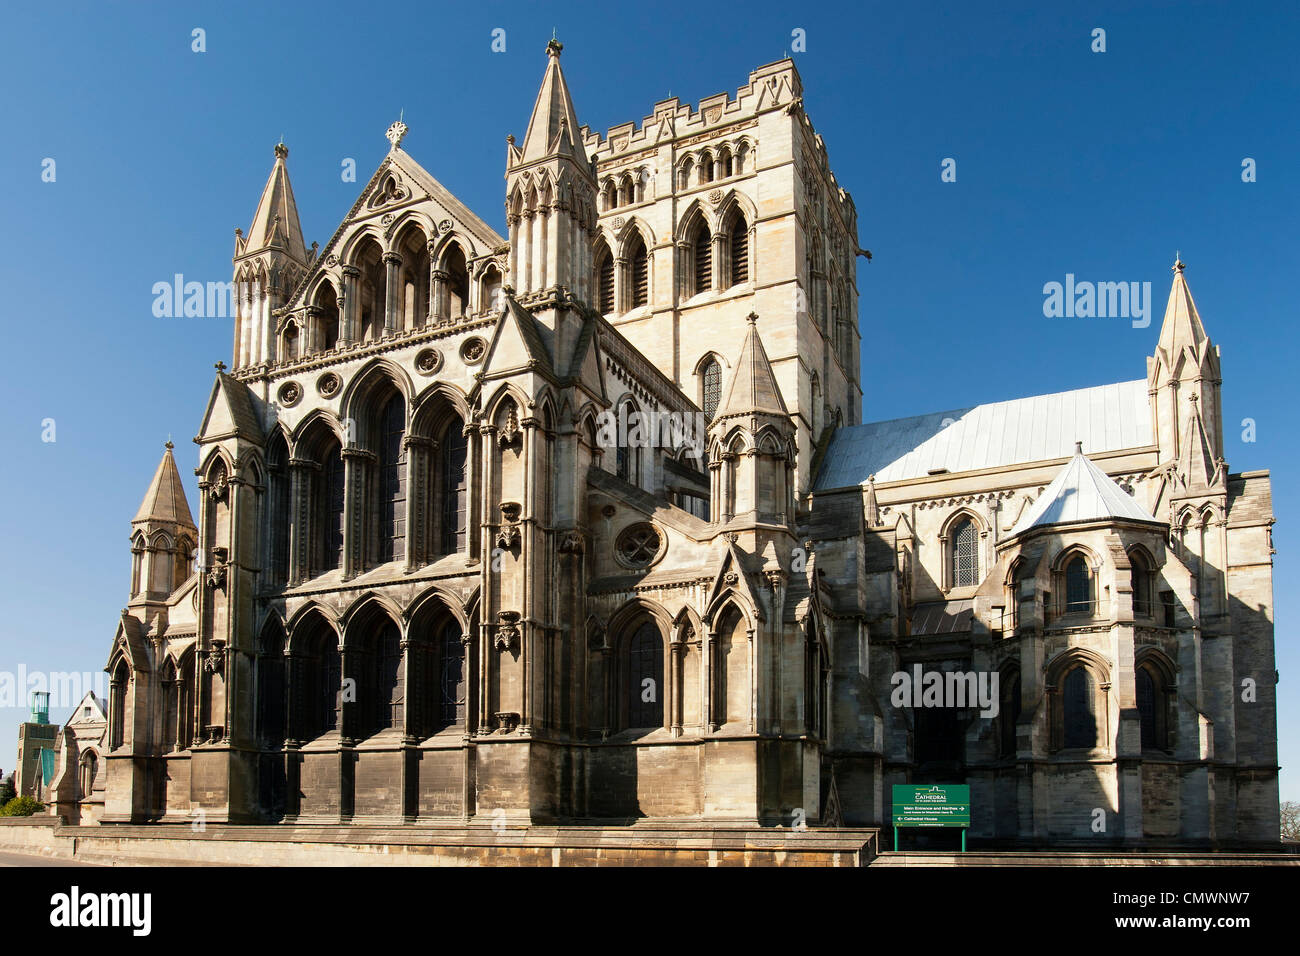 Roman Catholic Cathedral of St John the Baptist, Norwich, England, UK Stock Photo